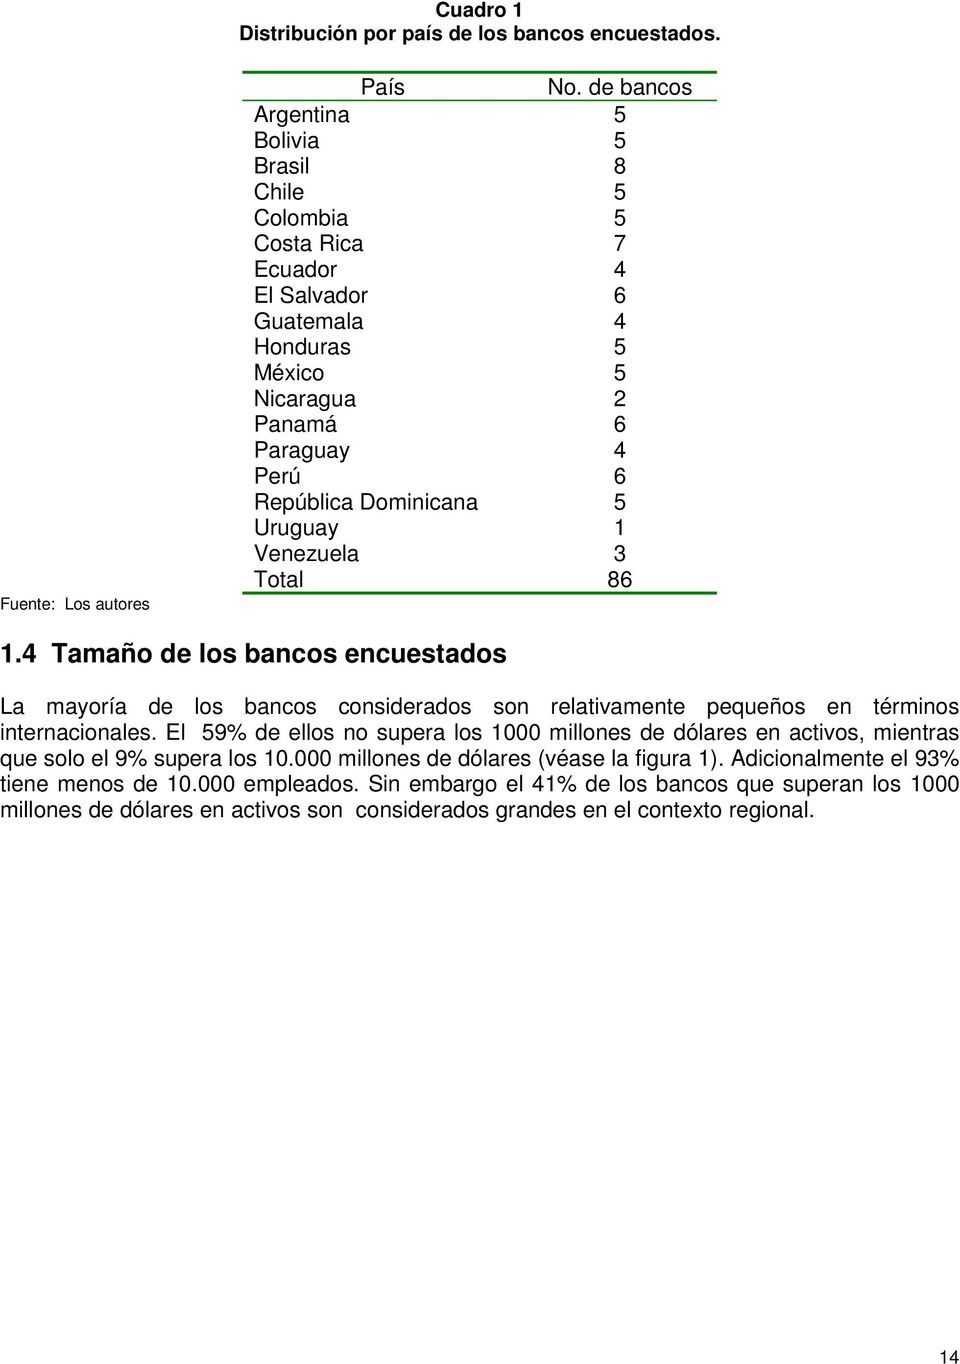 Uruguay 1 Venezuela 3 Total 86 1.4 Tamaño de los bancos encuestados La mayoría de los bancos considerados son relativamente pequeños en términos internacionales.